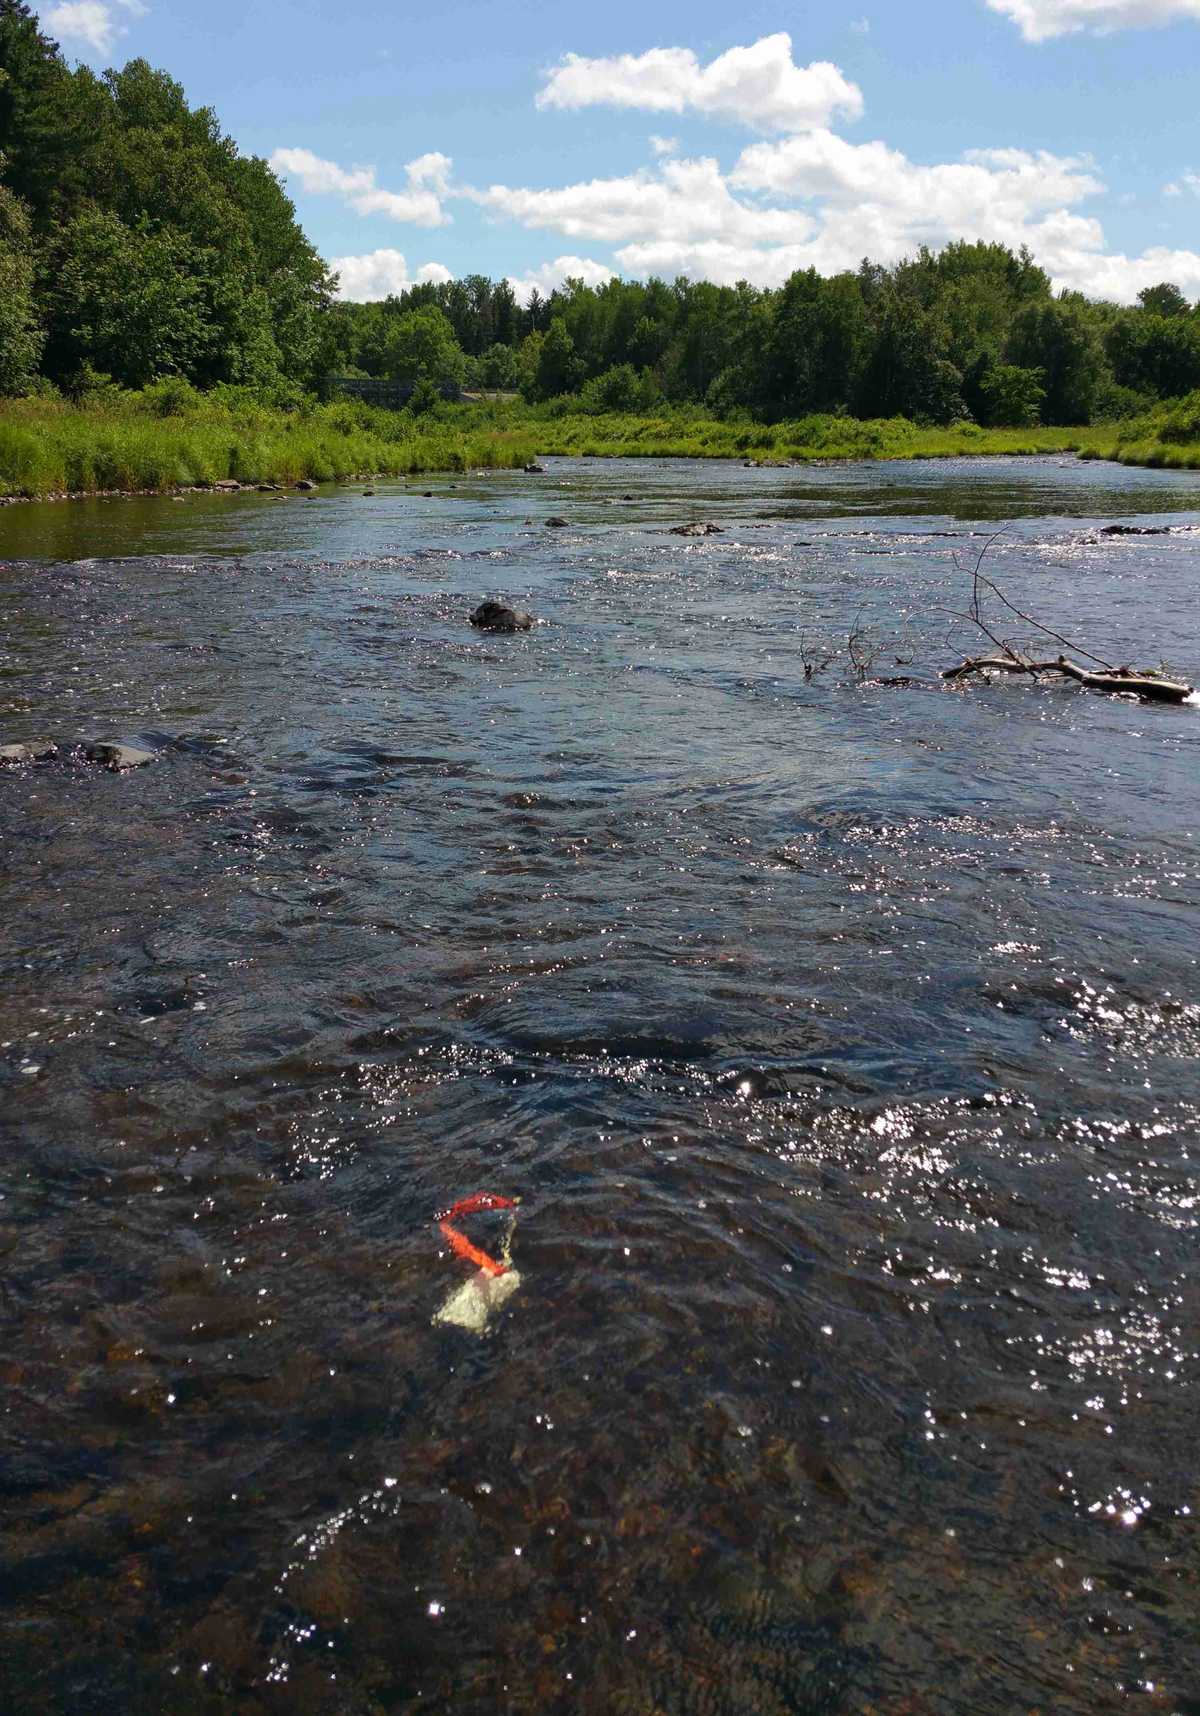 Une sonde de température installée dans une rivière par RivTemp